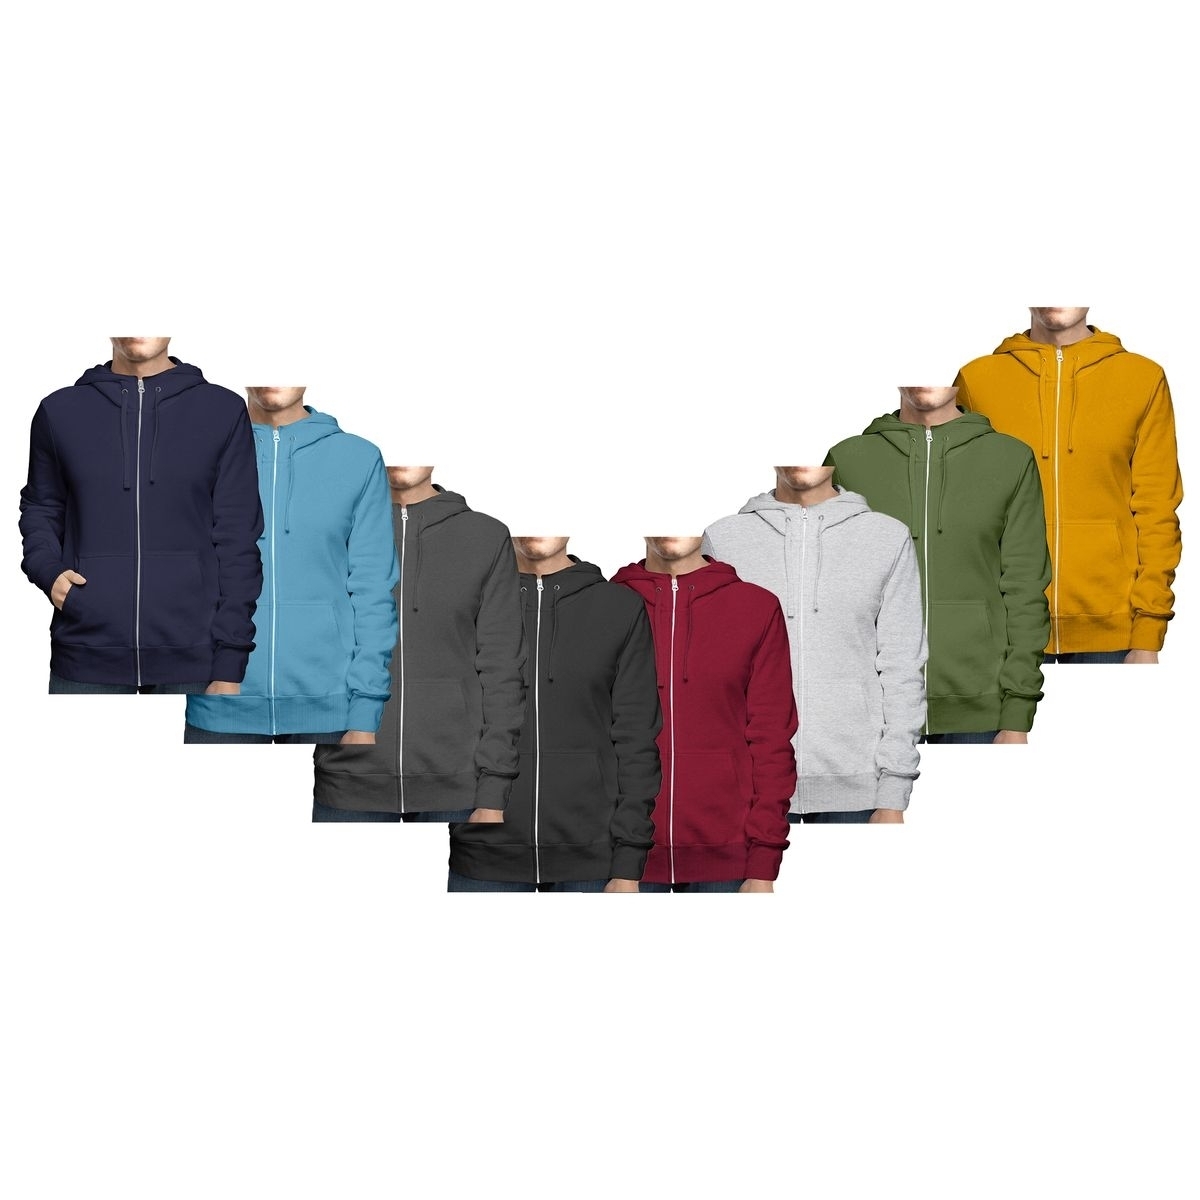 Men's Big & Tall Winter Warm Soft Cozy Full Zip-Up Fleece Lined Hoodie Sweatshirt - Navy, X-Large